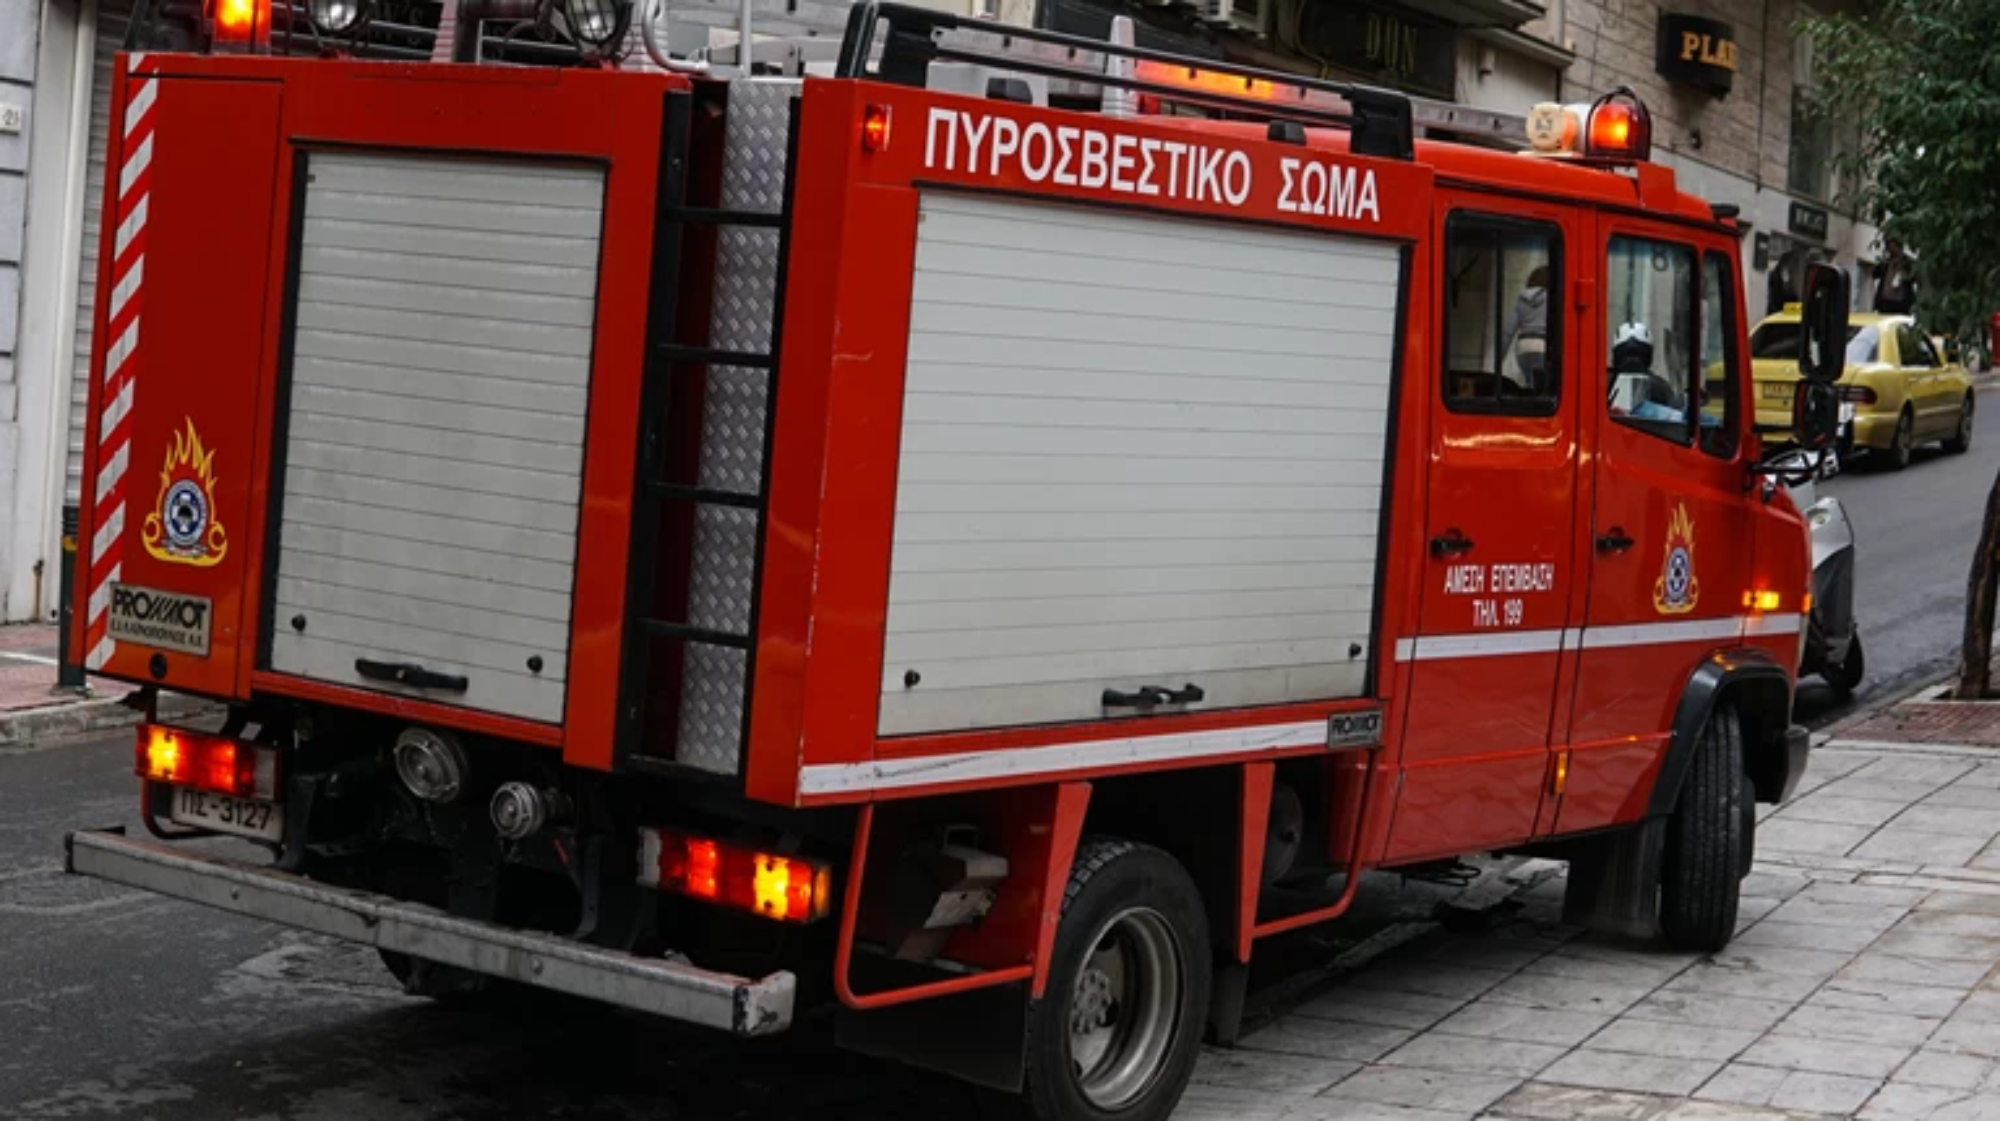 Έκρηξη σε κατάστημα στο κέντρο της Αθήνας – Ένας τραυματίας